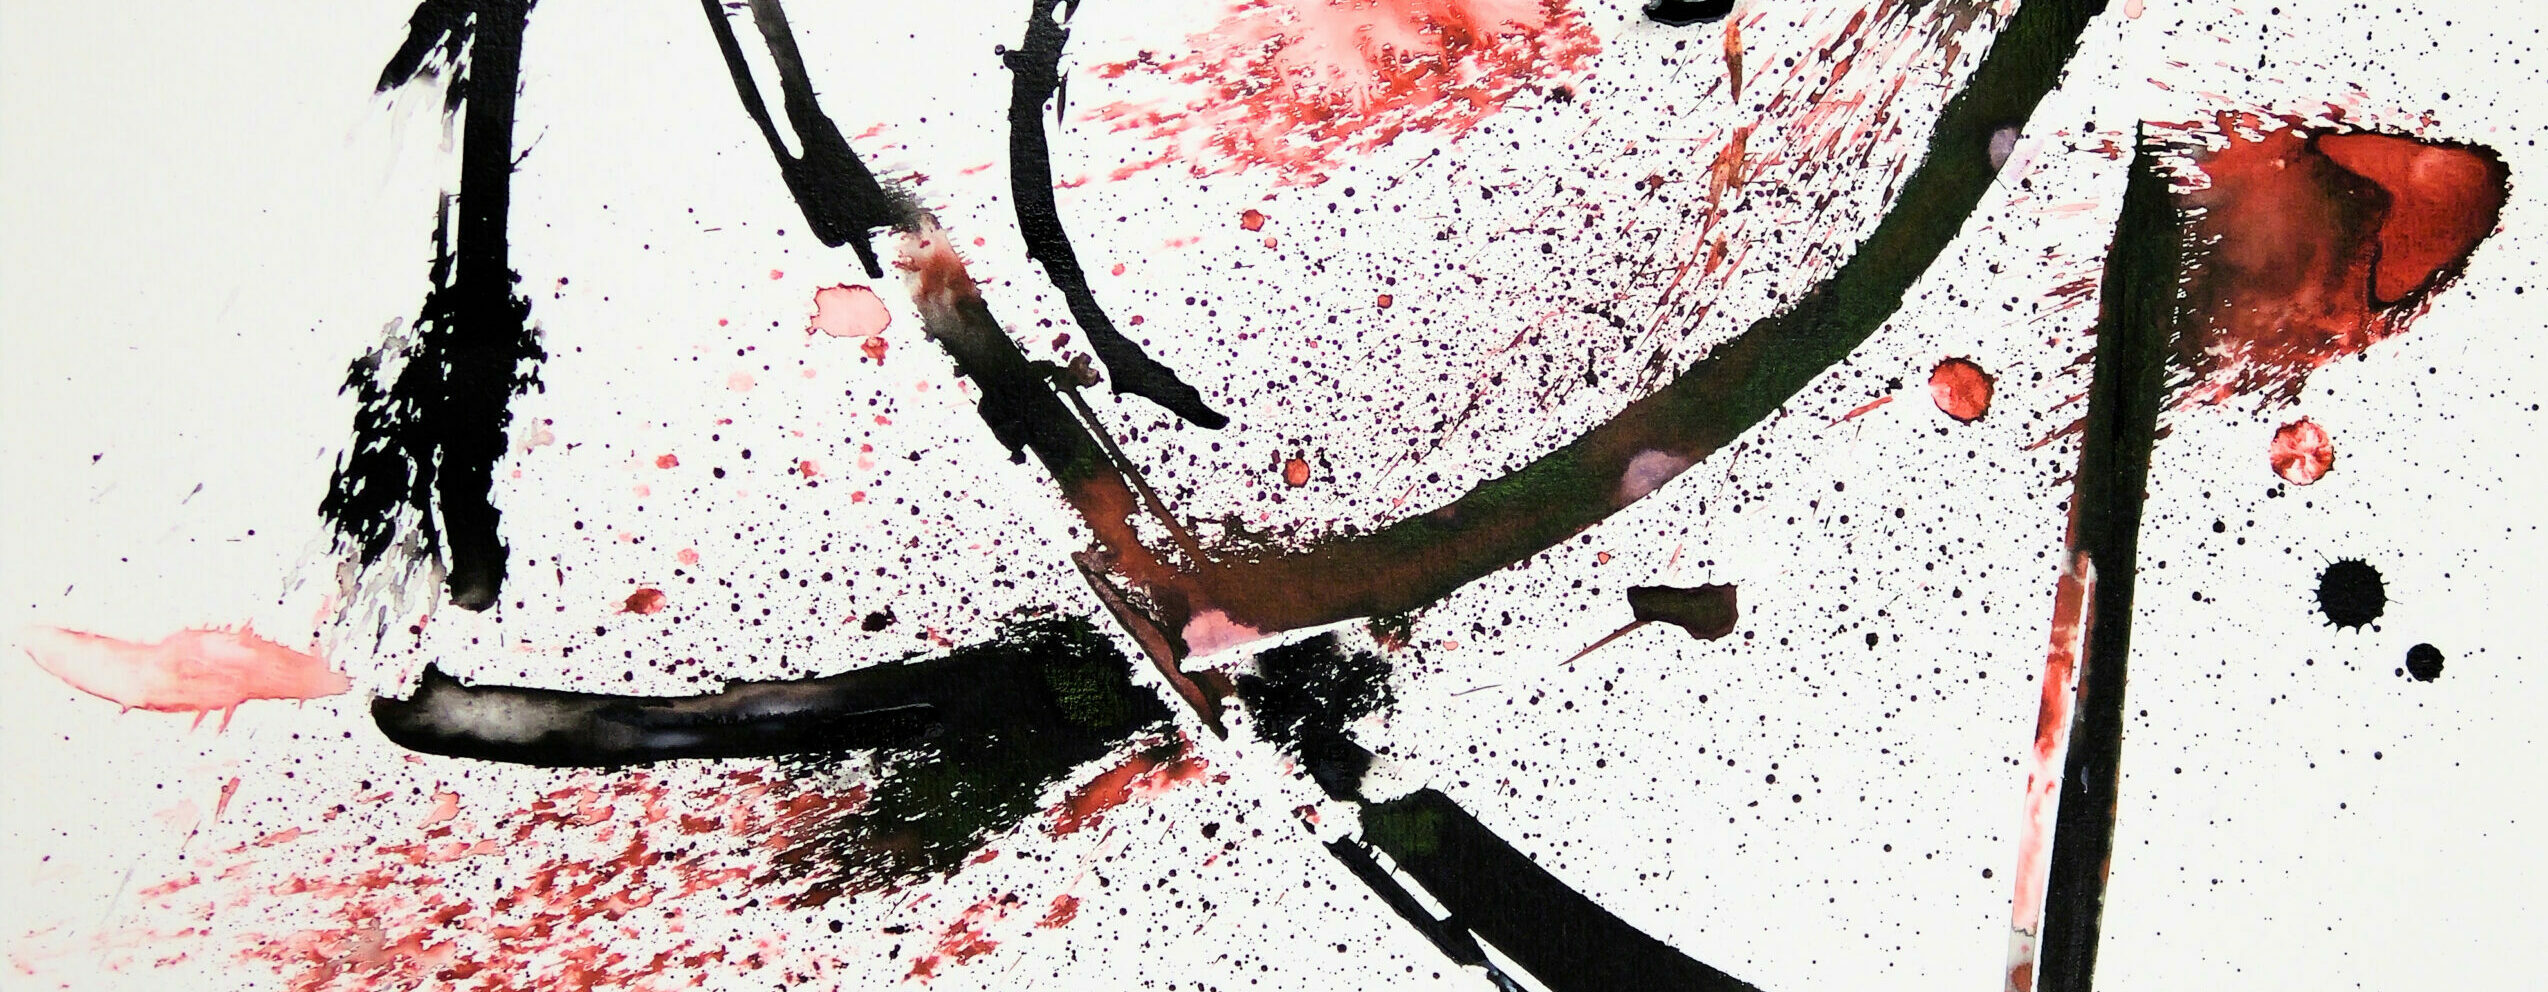 Des lignes noires artistiques se croisent, avec des éclaboussures d'encre rouge.